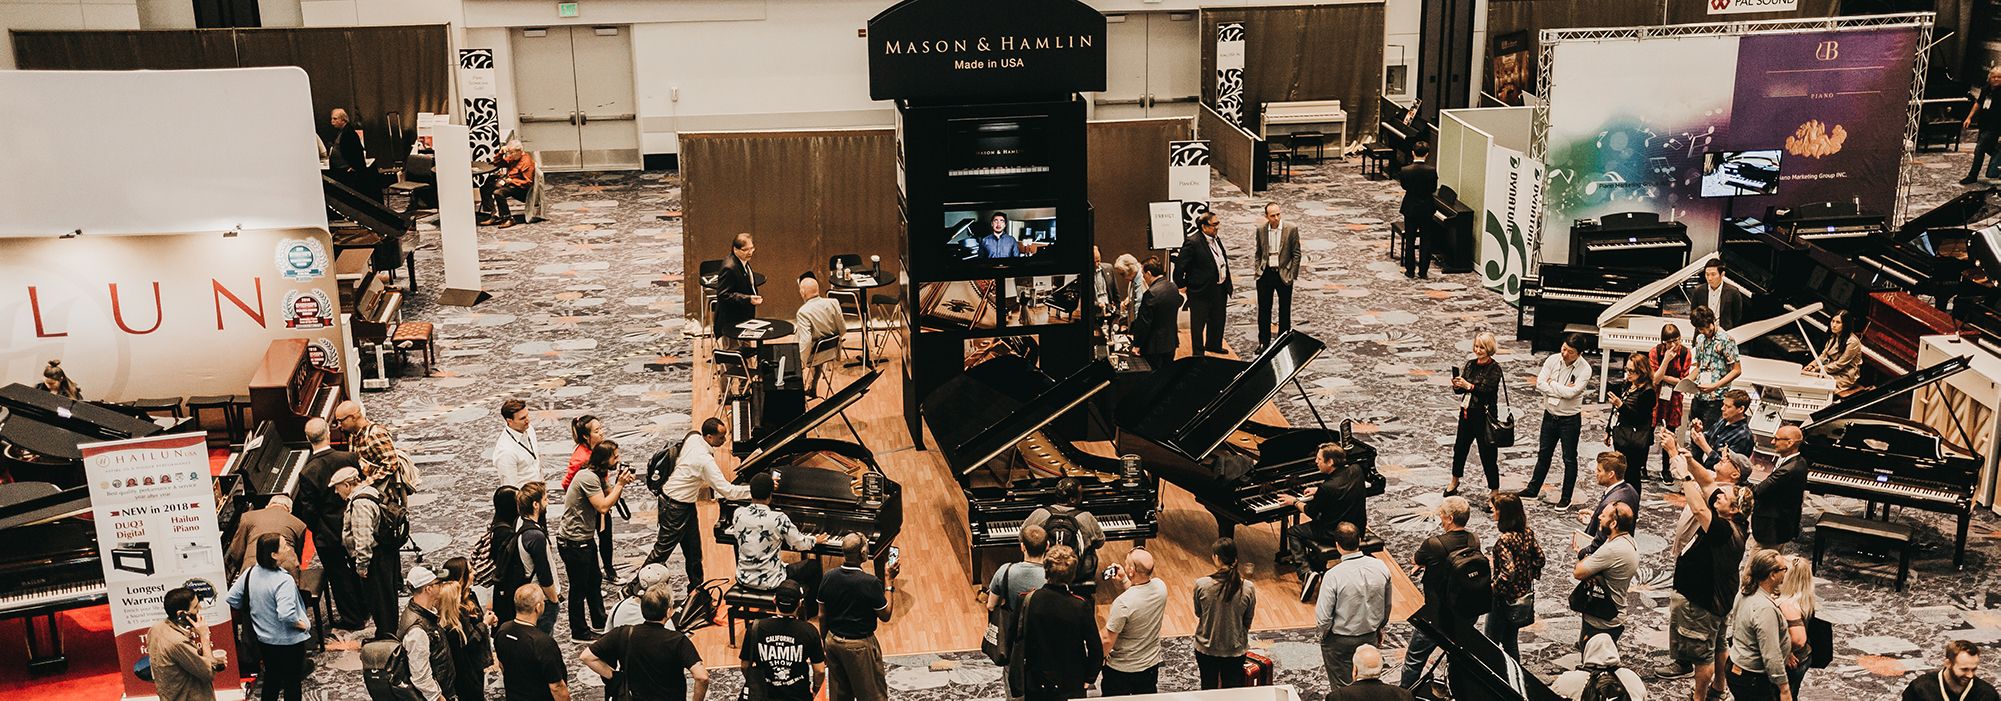 NammShow2019 cover opt • Mason & Hamlin Piano Company • Made in the USA